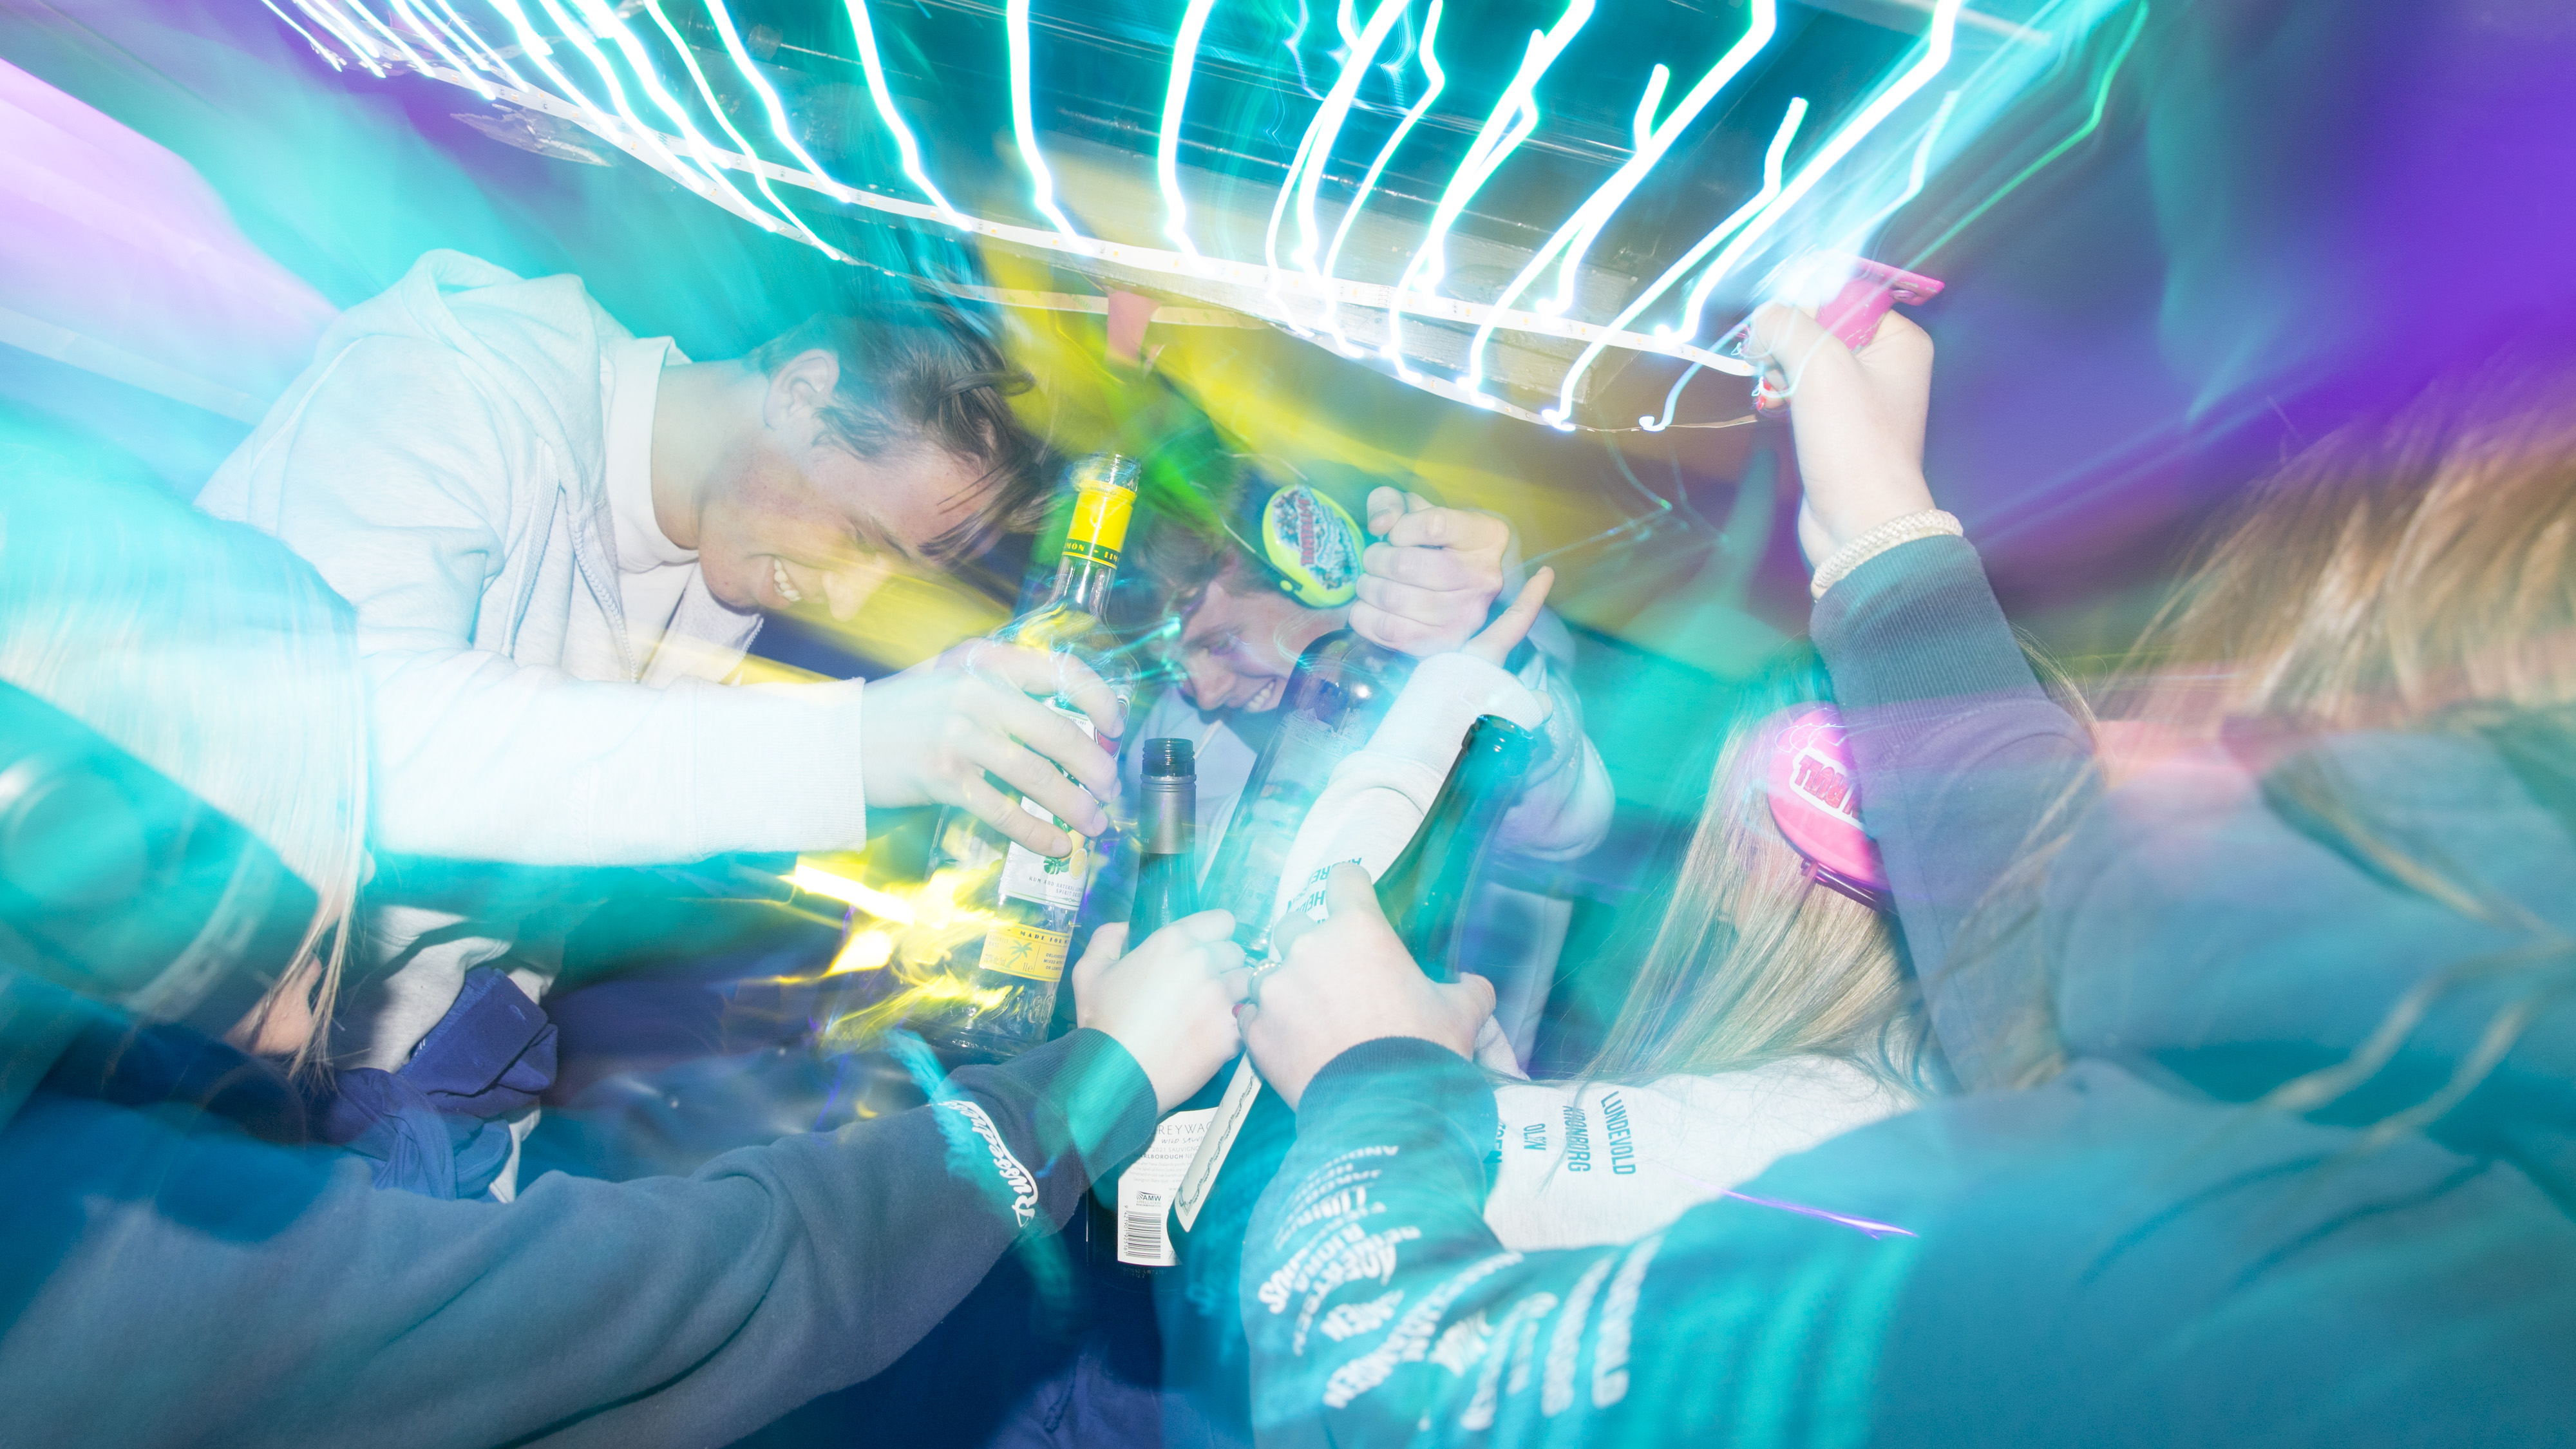 Gutter og jenter i russedresser fester og drikker sammen i en russebuss. Foto.